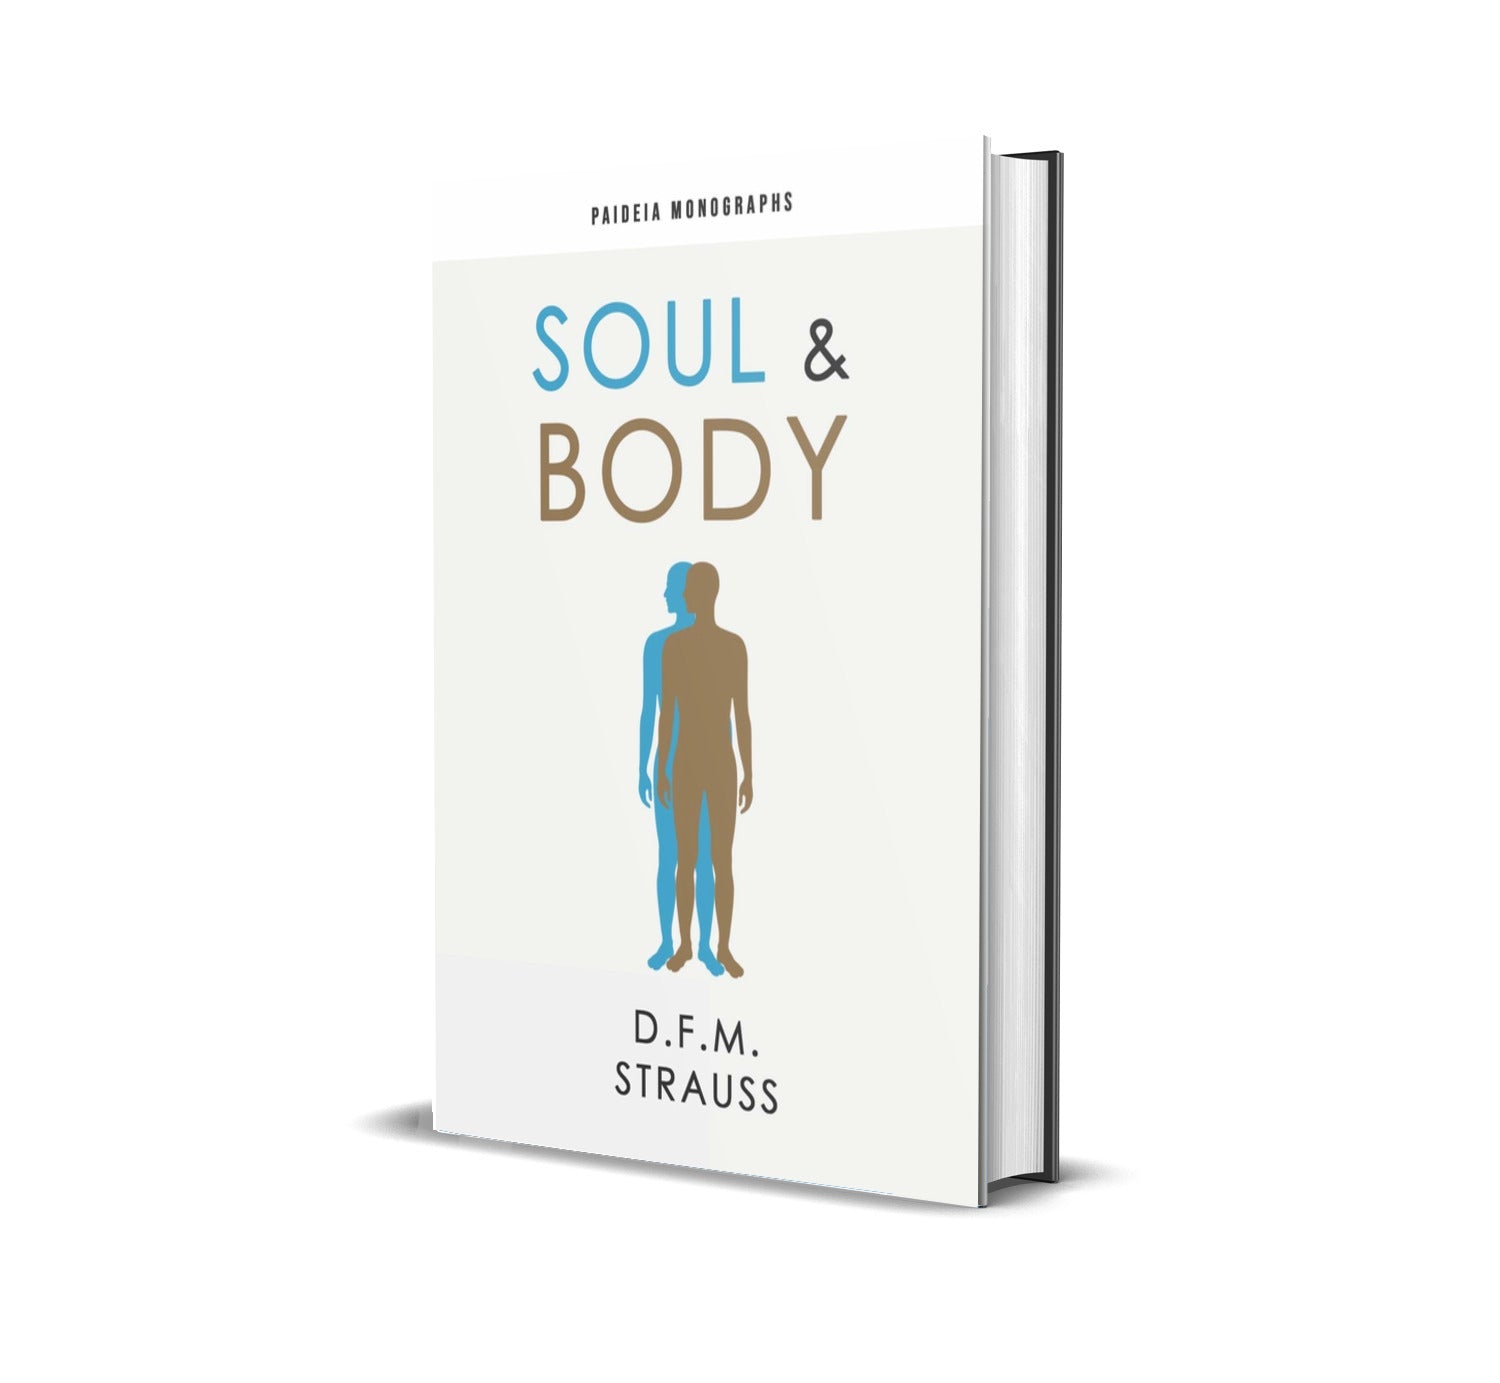 Soul & Body (Paideia Monographs)